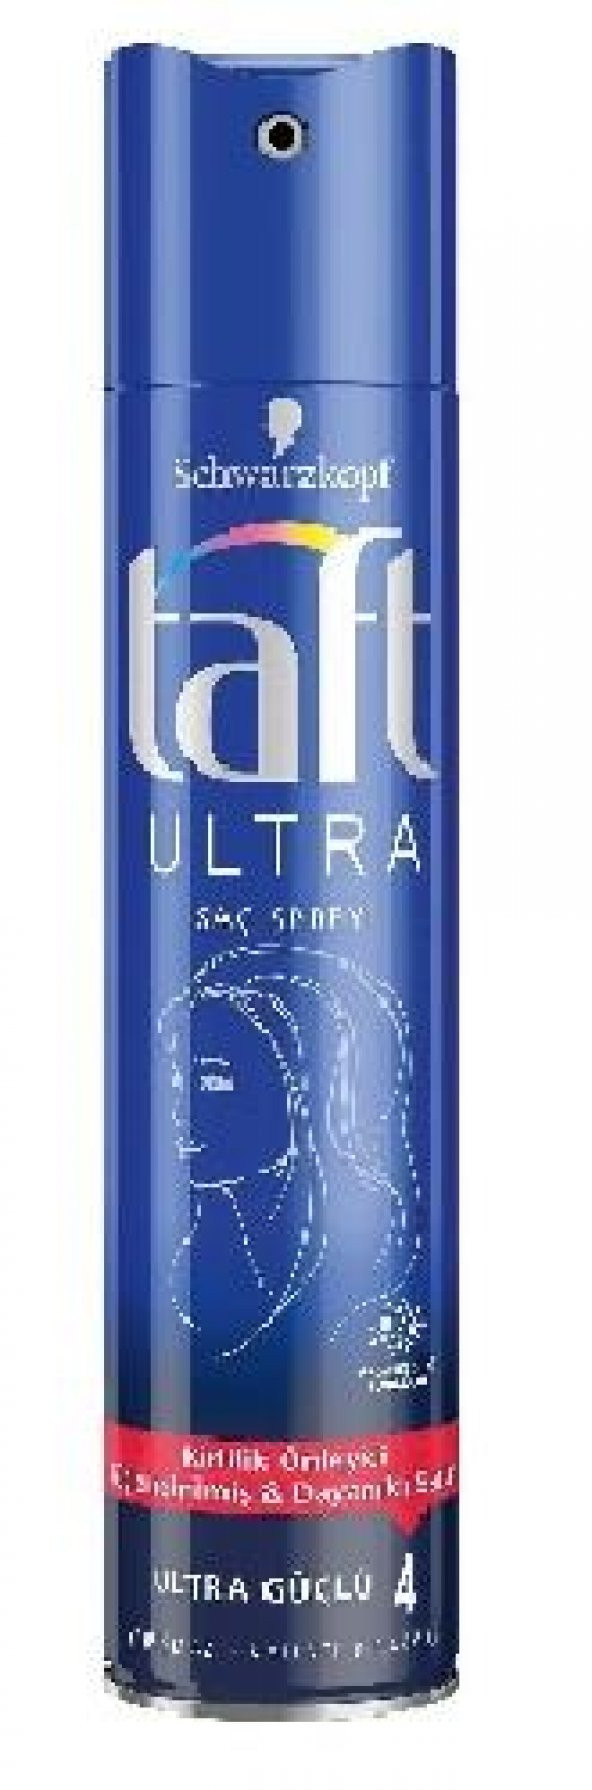 Taft Ultra Güçlü 4 Saç Spreyi 250 ml